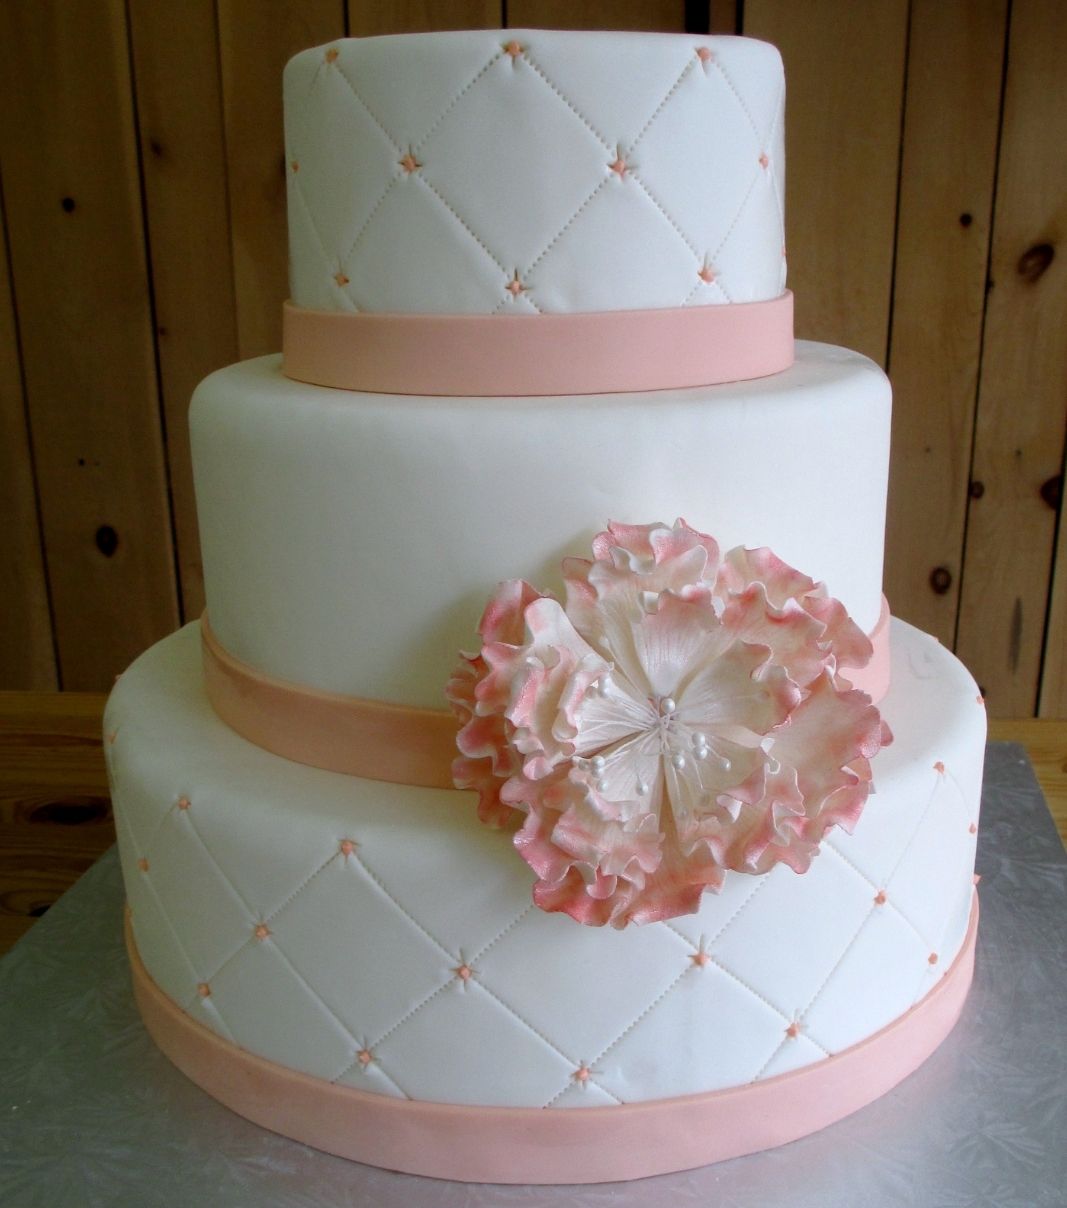 Gâteau de mariage: gâteau de 3 étages à thème blanc et pêche avec une couverture fondante à effet matelassé (quilting) et décoré d'une grosse fleur en fondant sucré avec une touche persillée de couleur rose pêche.